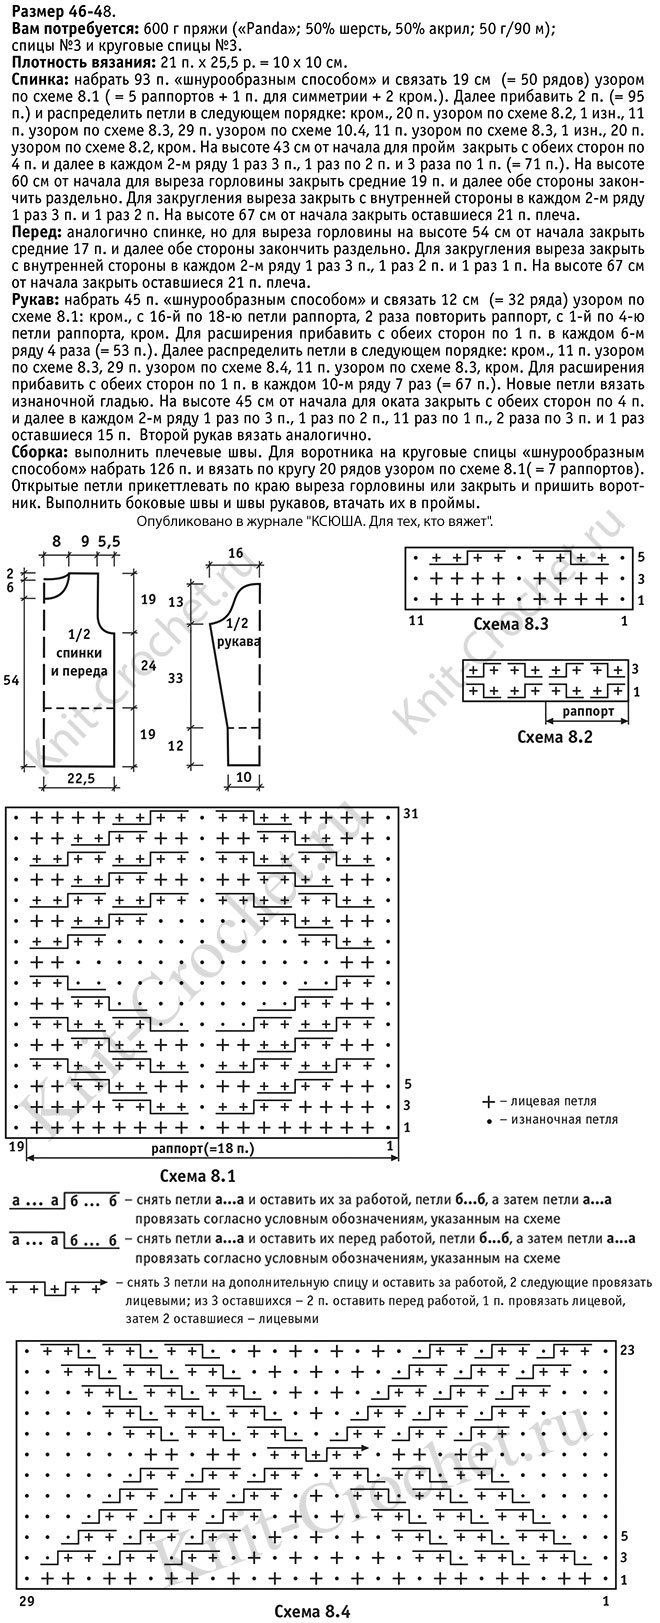 Выкройка, схемы узоров с описанием вязания спицами женского свитера с рельефными узорами размера 46-48.